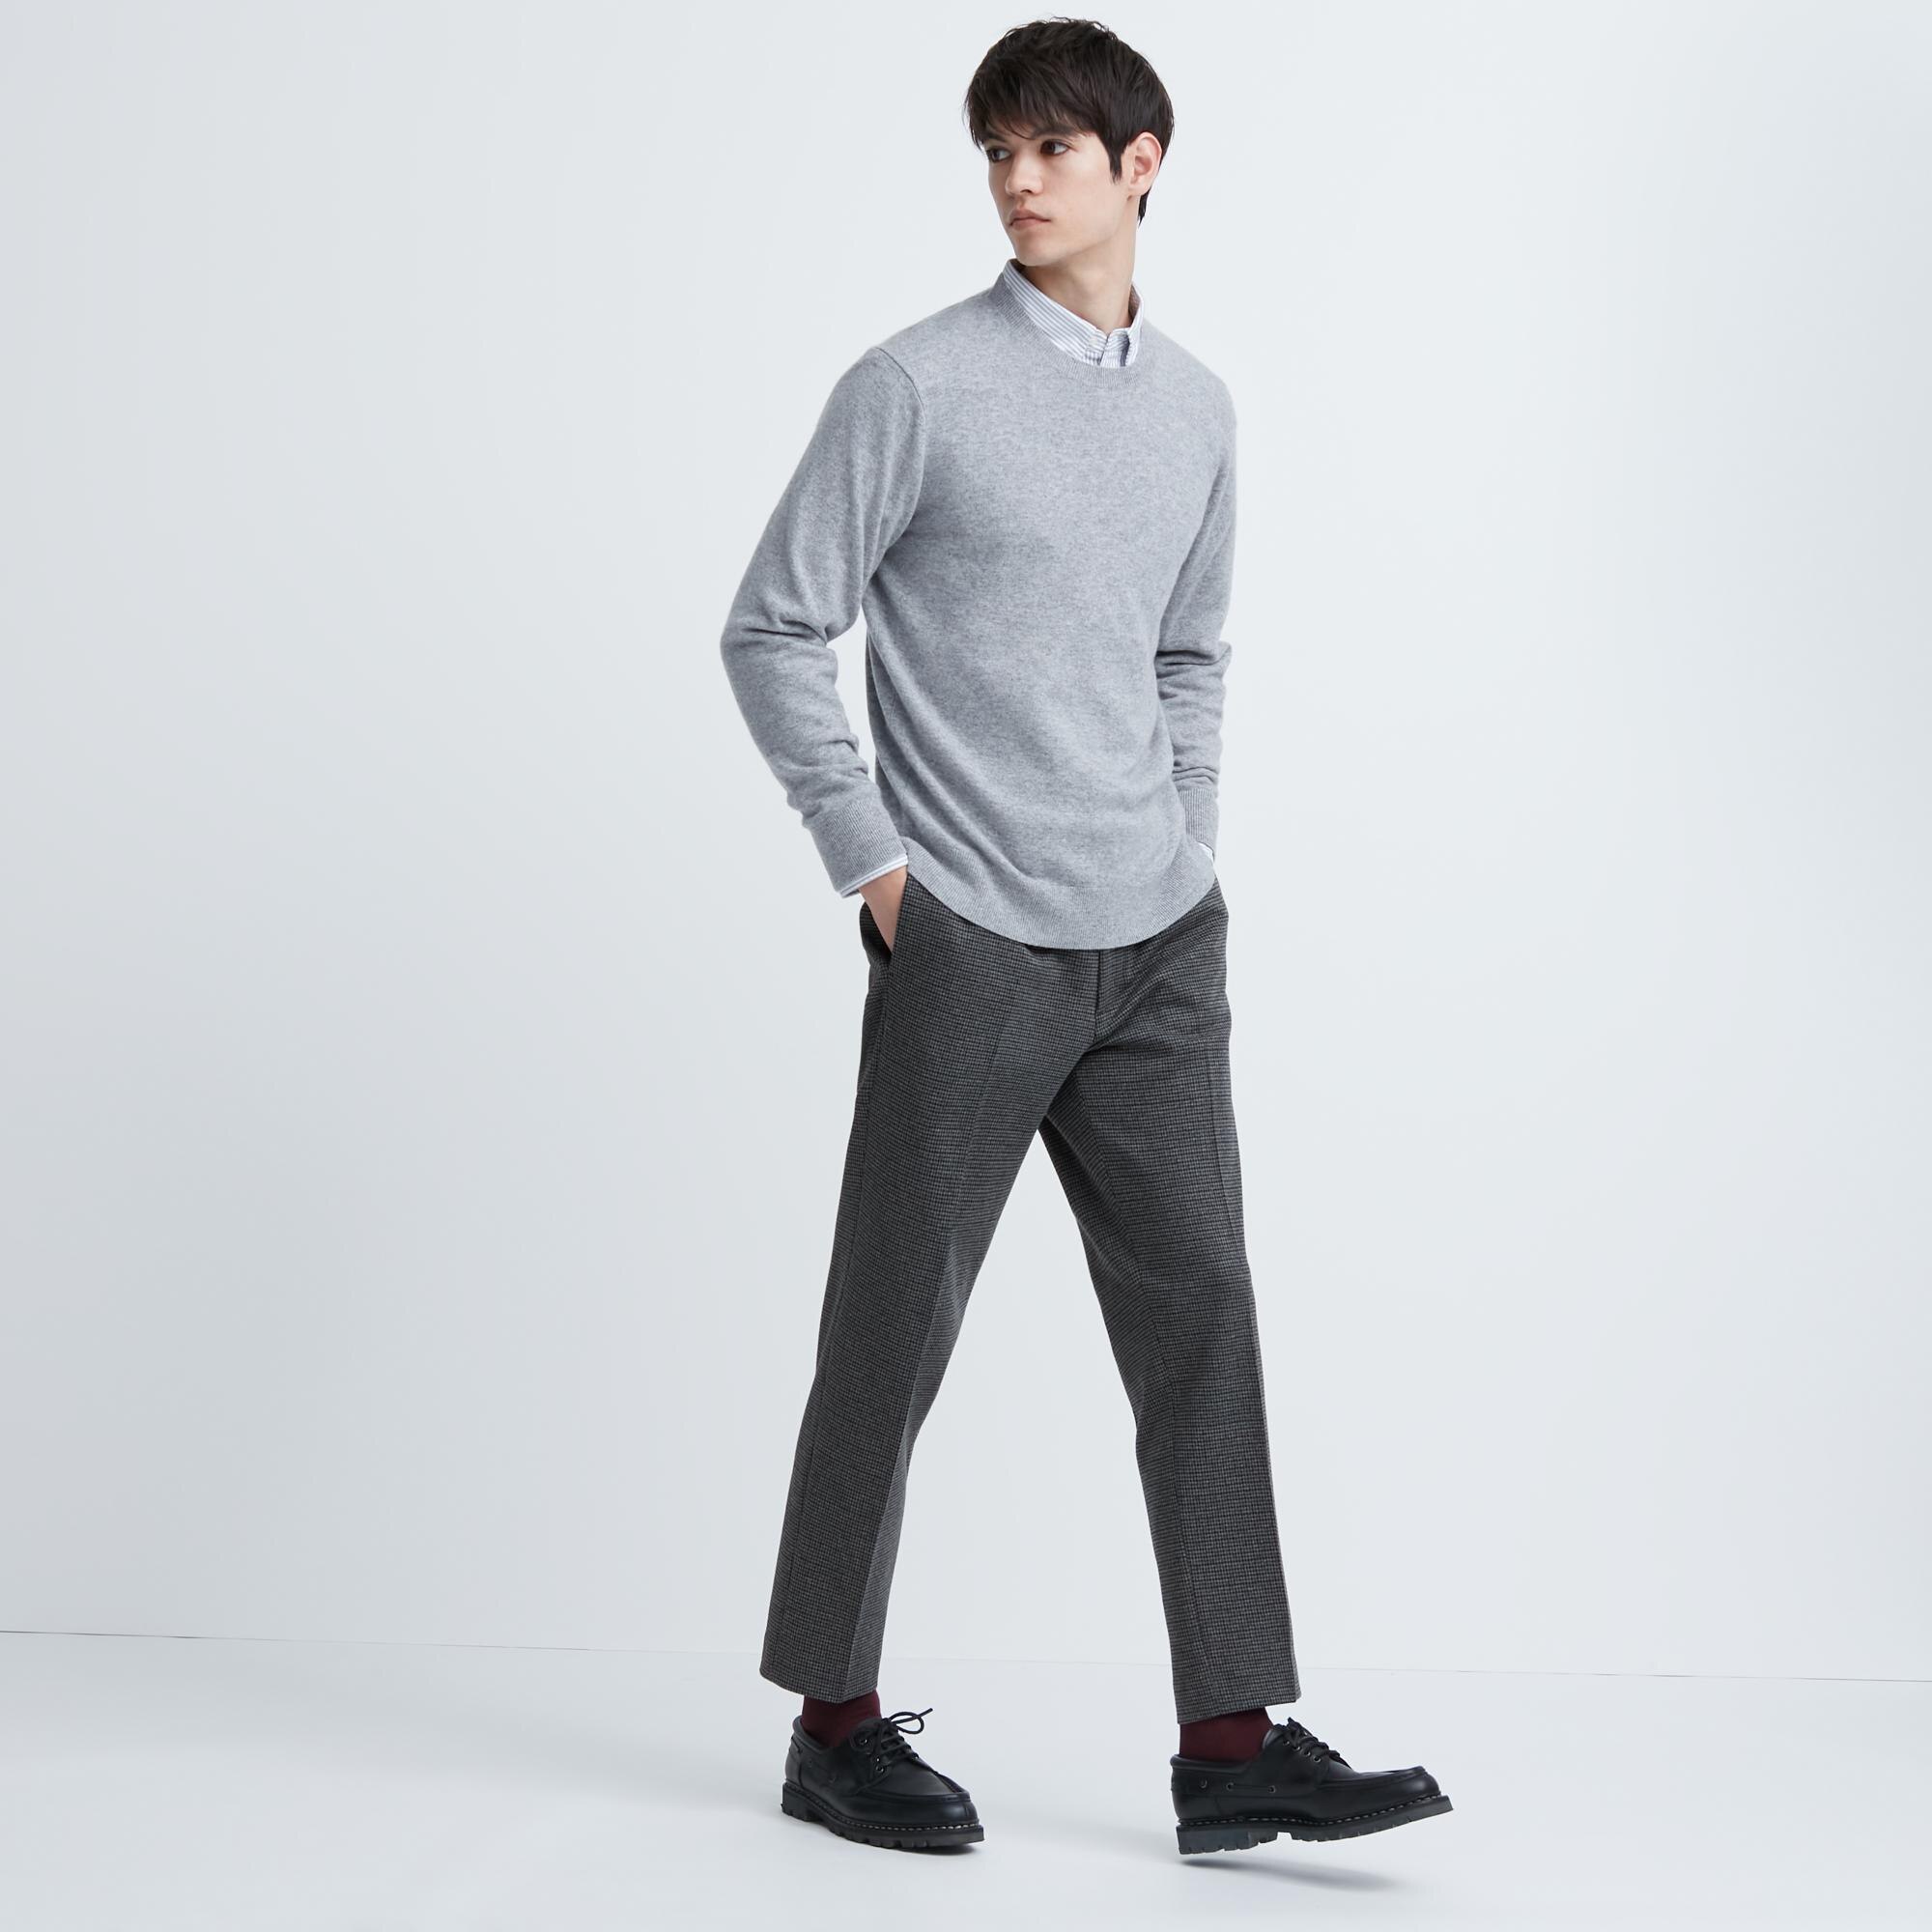 Buy Grey Ankle Fit Denim Jeans Online | Tistabene - Tistabene